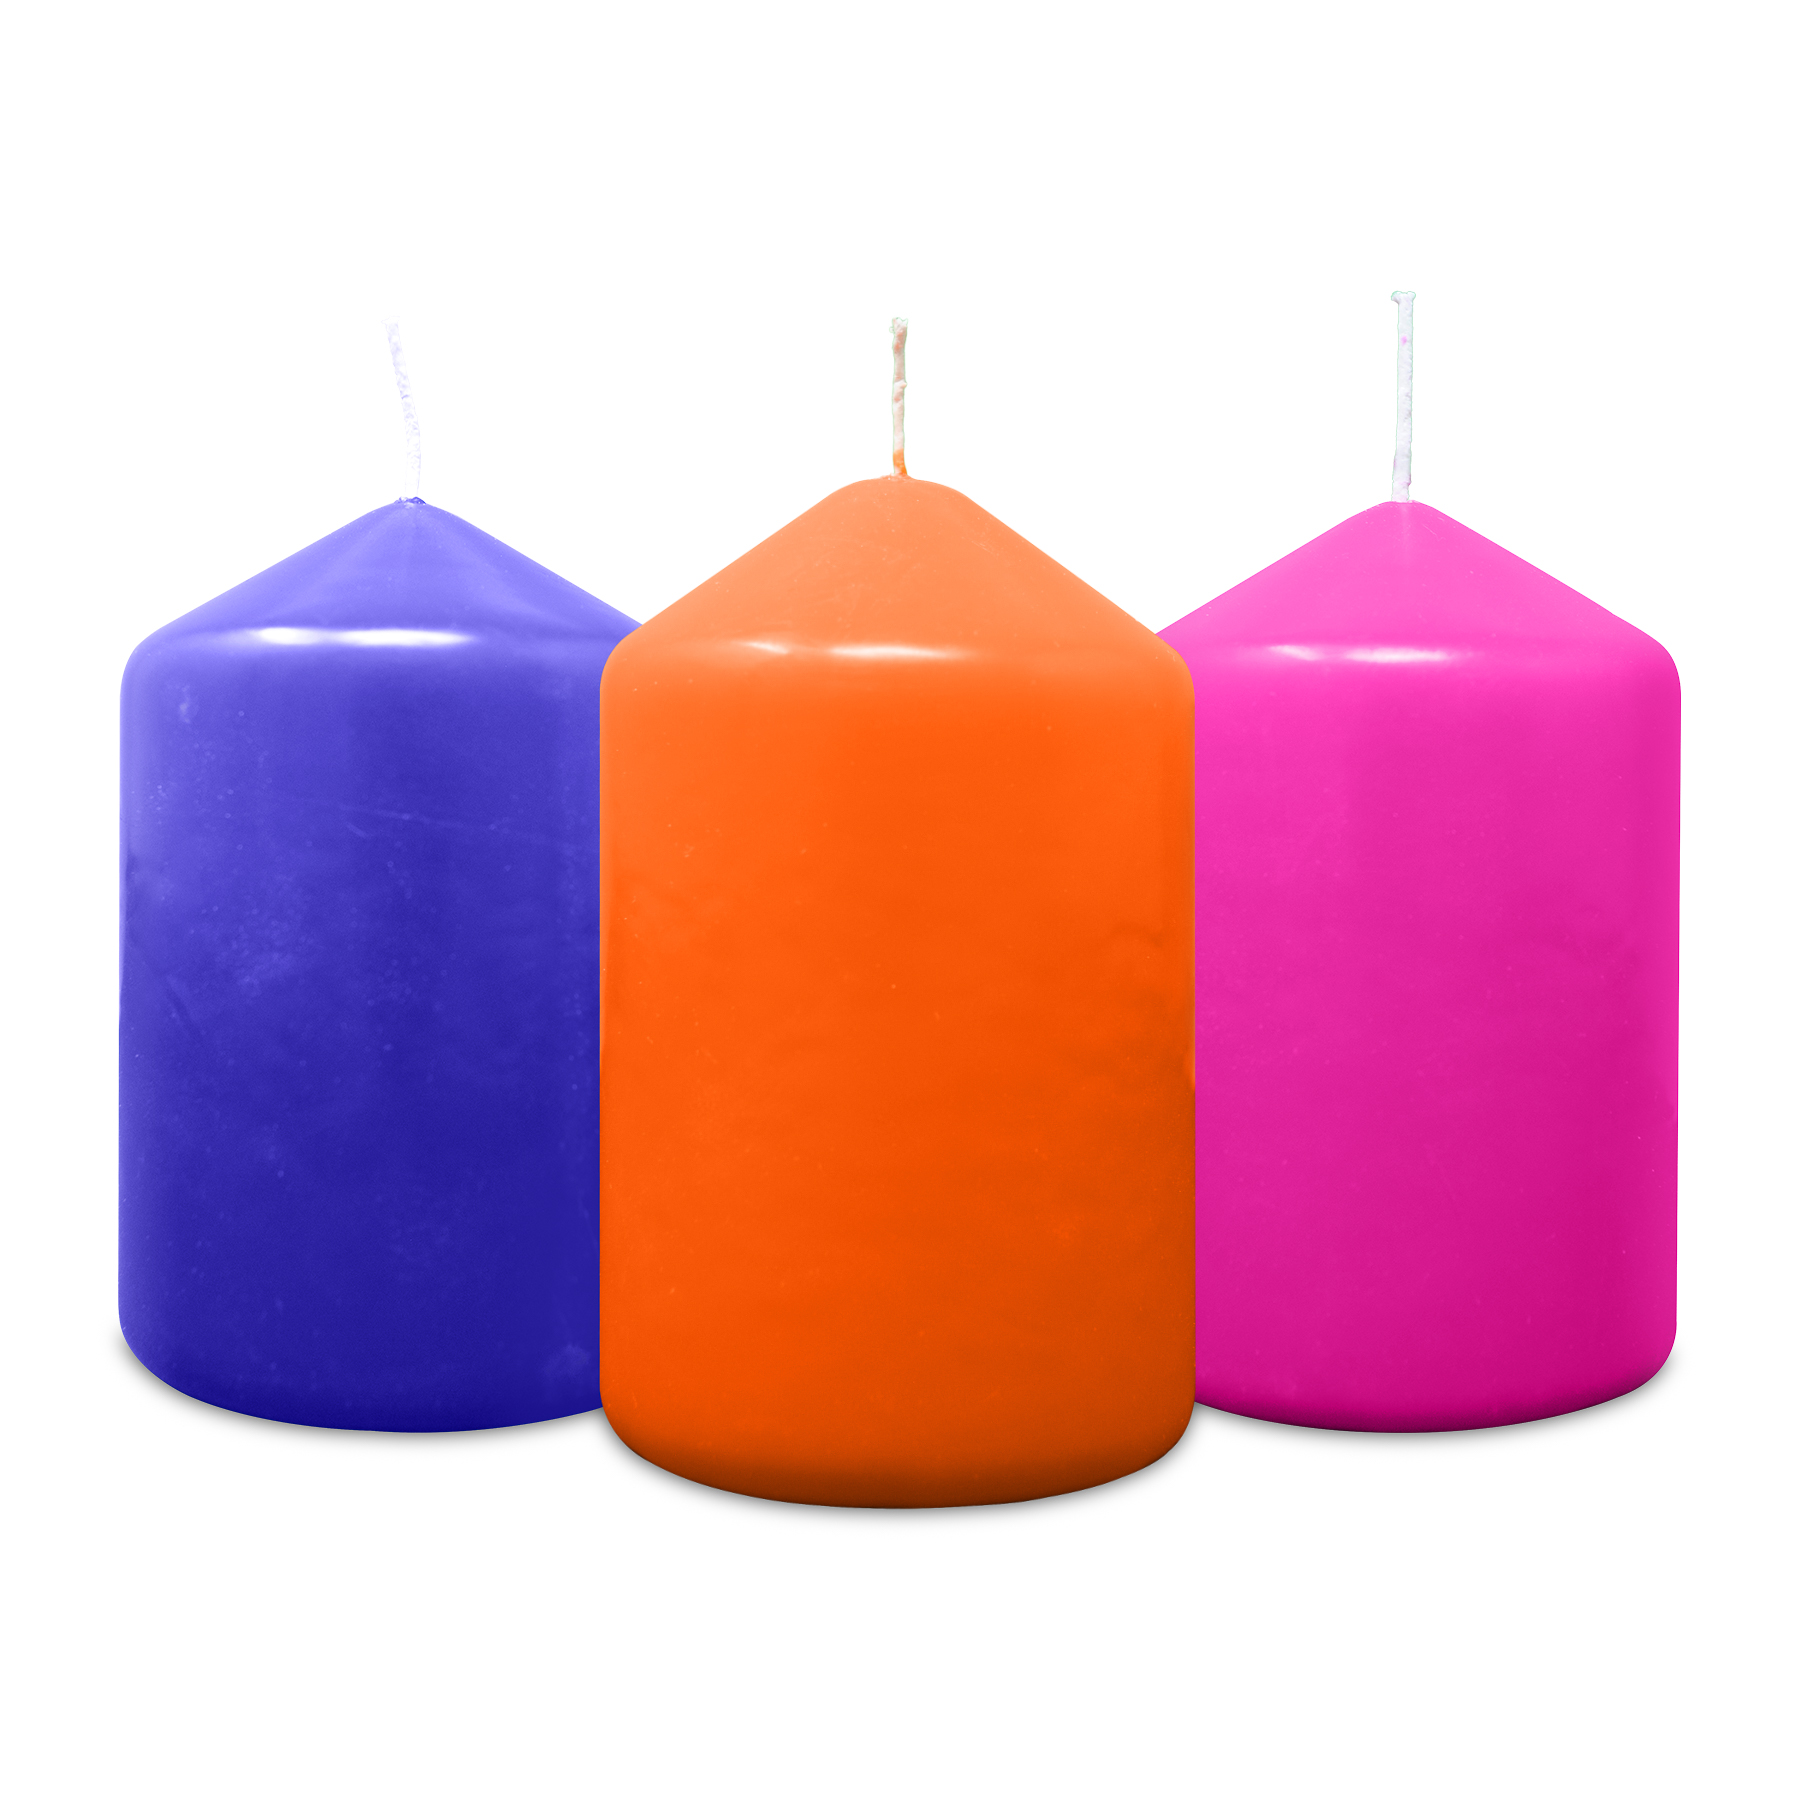 DIY Kerzen 16 Farben x 5 g Färben für Wachs Paraffinwachs Wachsfarbstoff für Sojawachs Farbstoff für die Kerzenherstellung Kerzenfarben